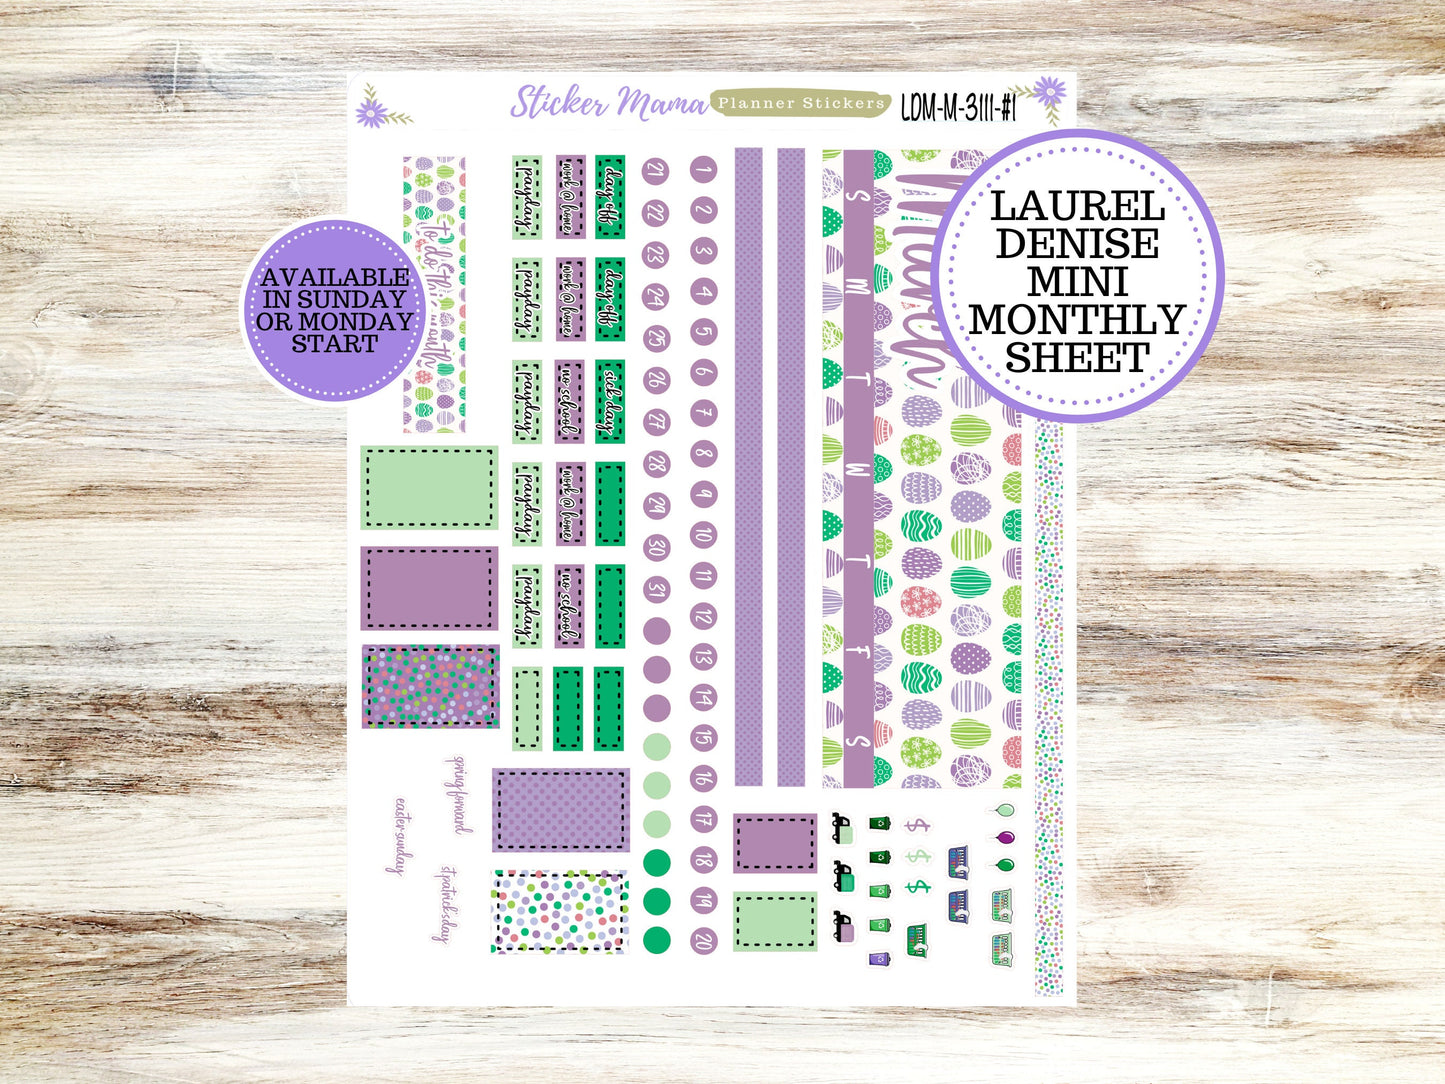 LAUREL DENISE PLANNER Kit #3111 || Laurel Denise Kit || Laurel Denise Stickers